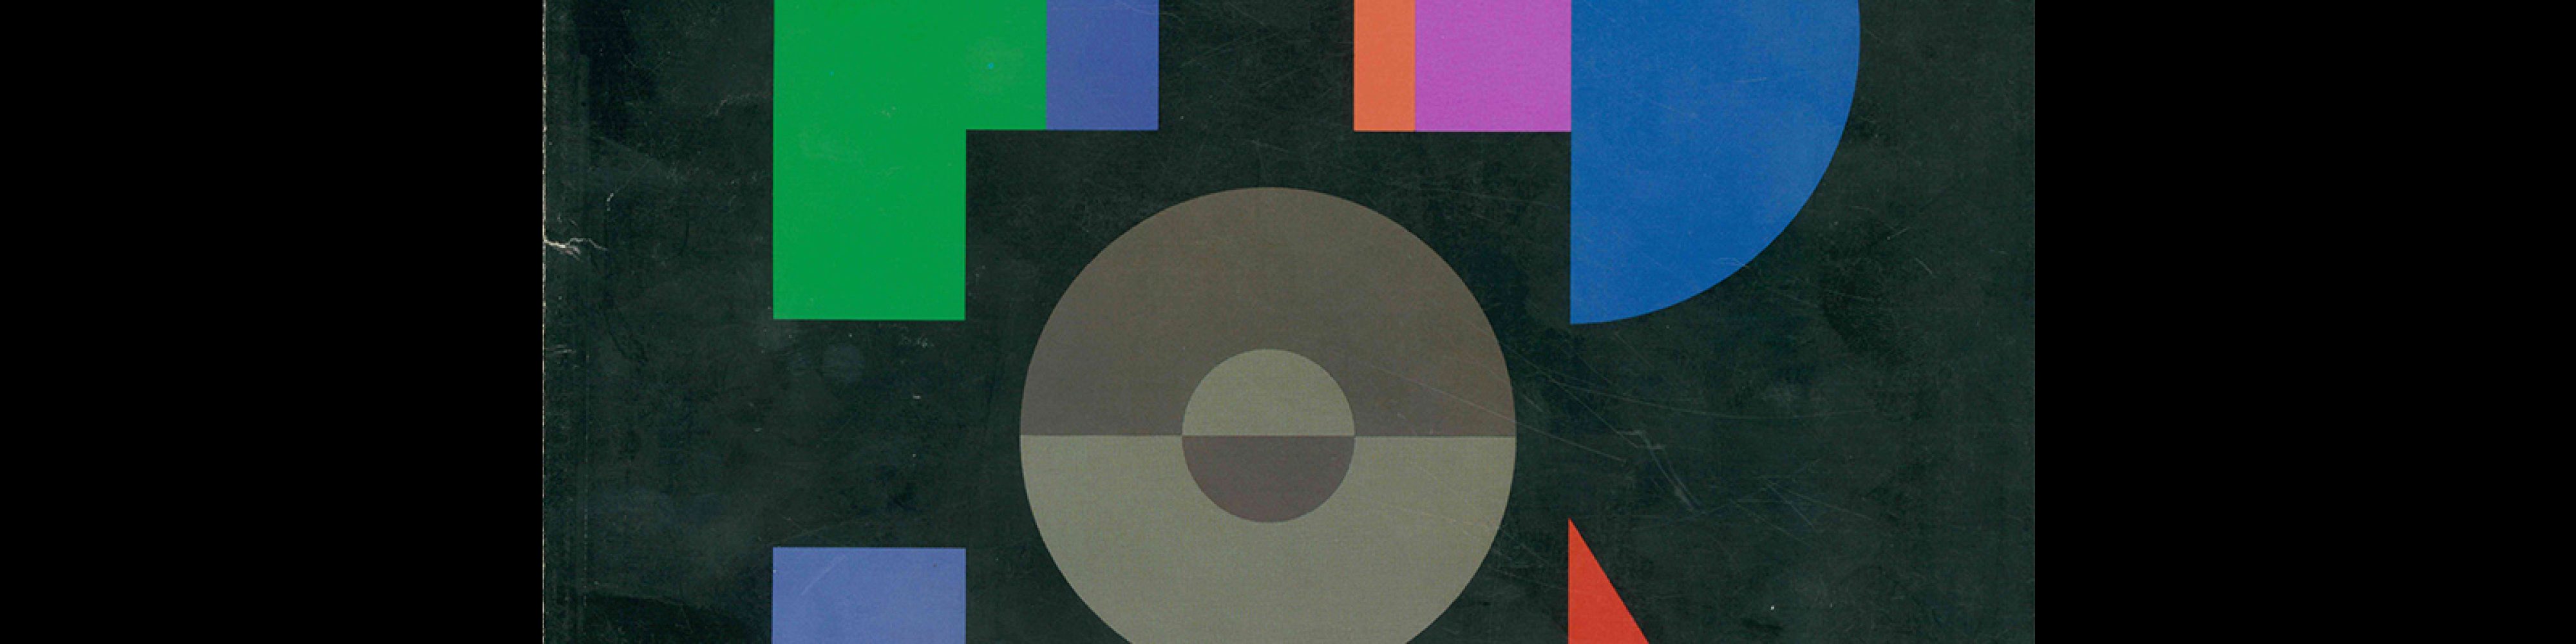 Idea 208, 1988-5. Cover design by Ryohei Kojima